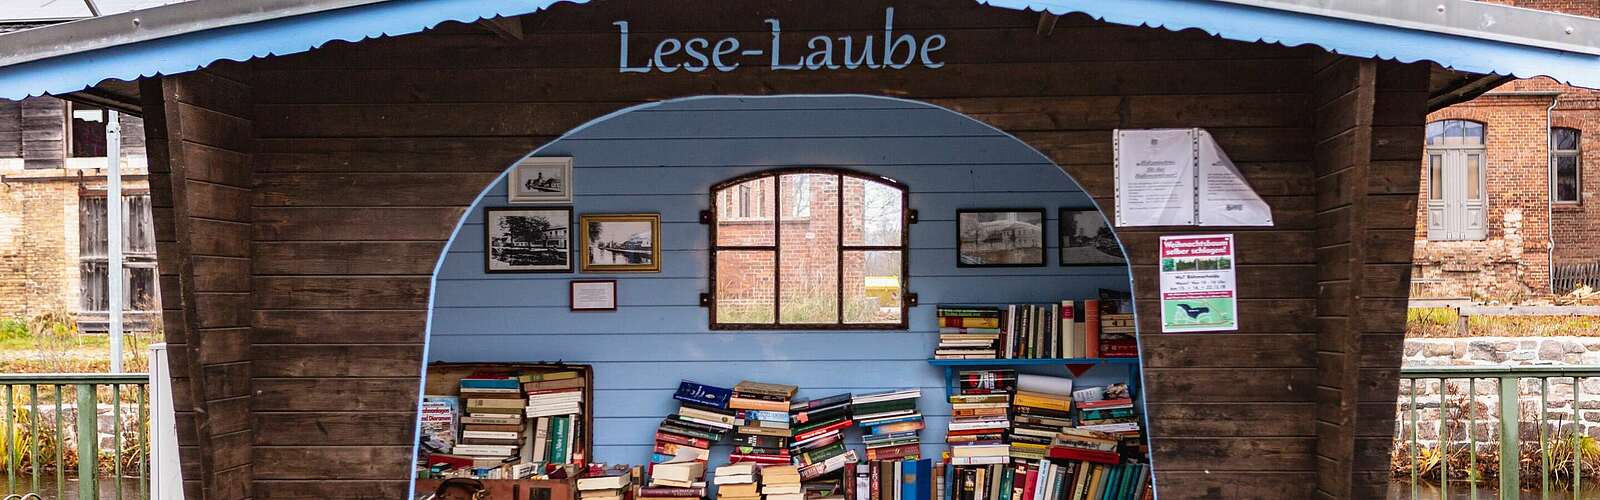 Lese-Laube in Zerpenschleuse,
        
    

        Foto: TMB-Fotoarchiv/Steffen Lehmann